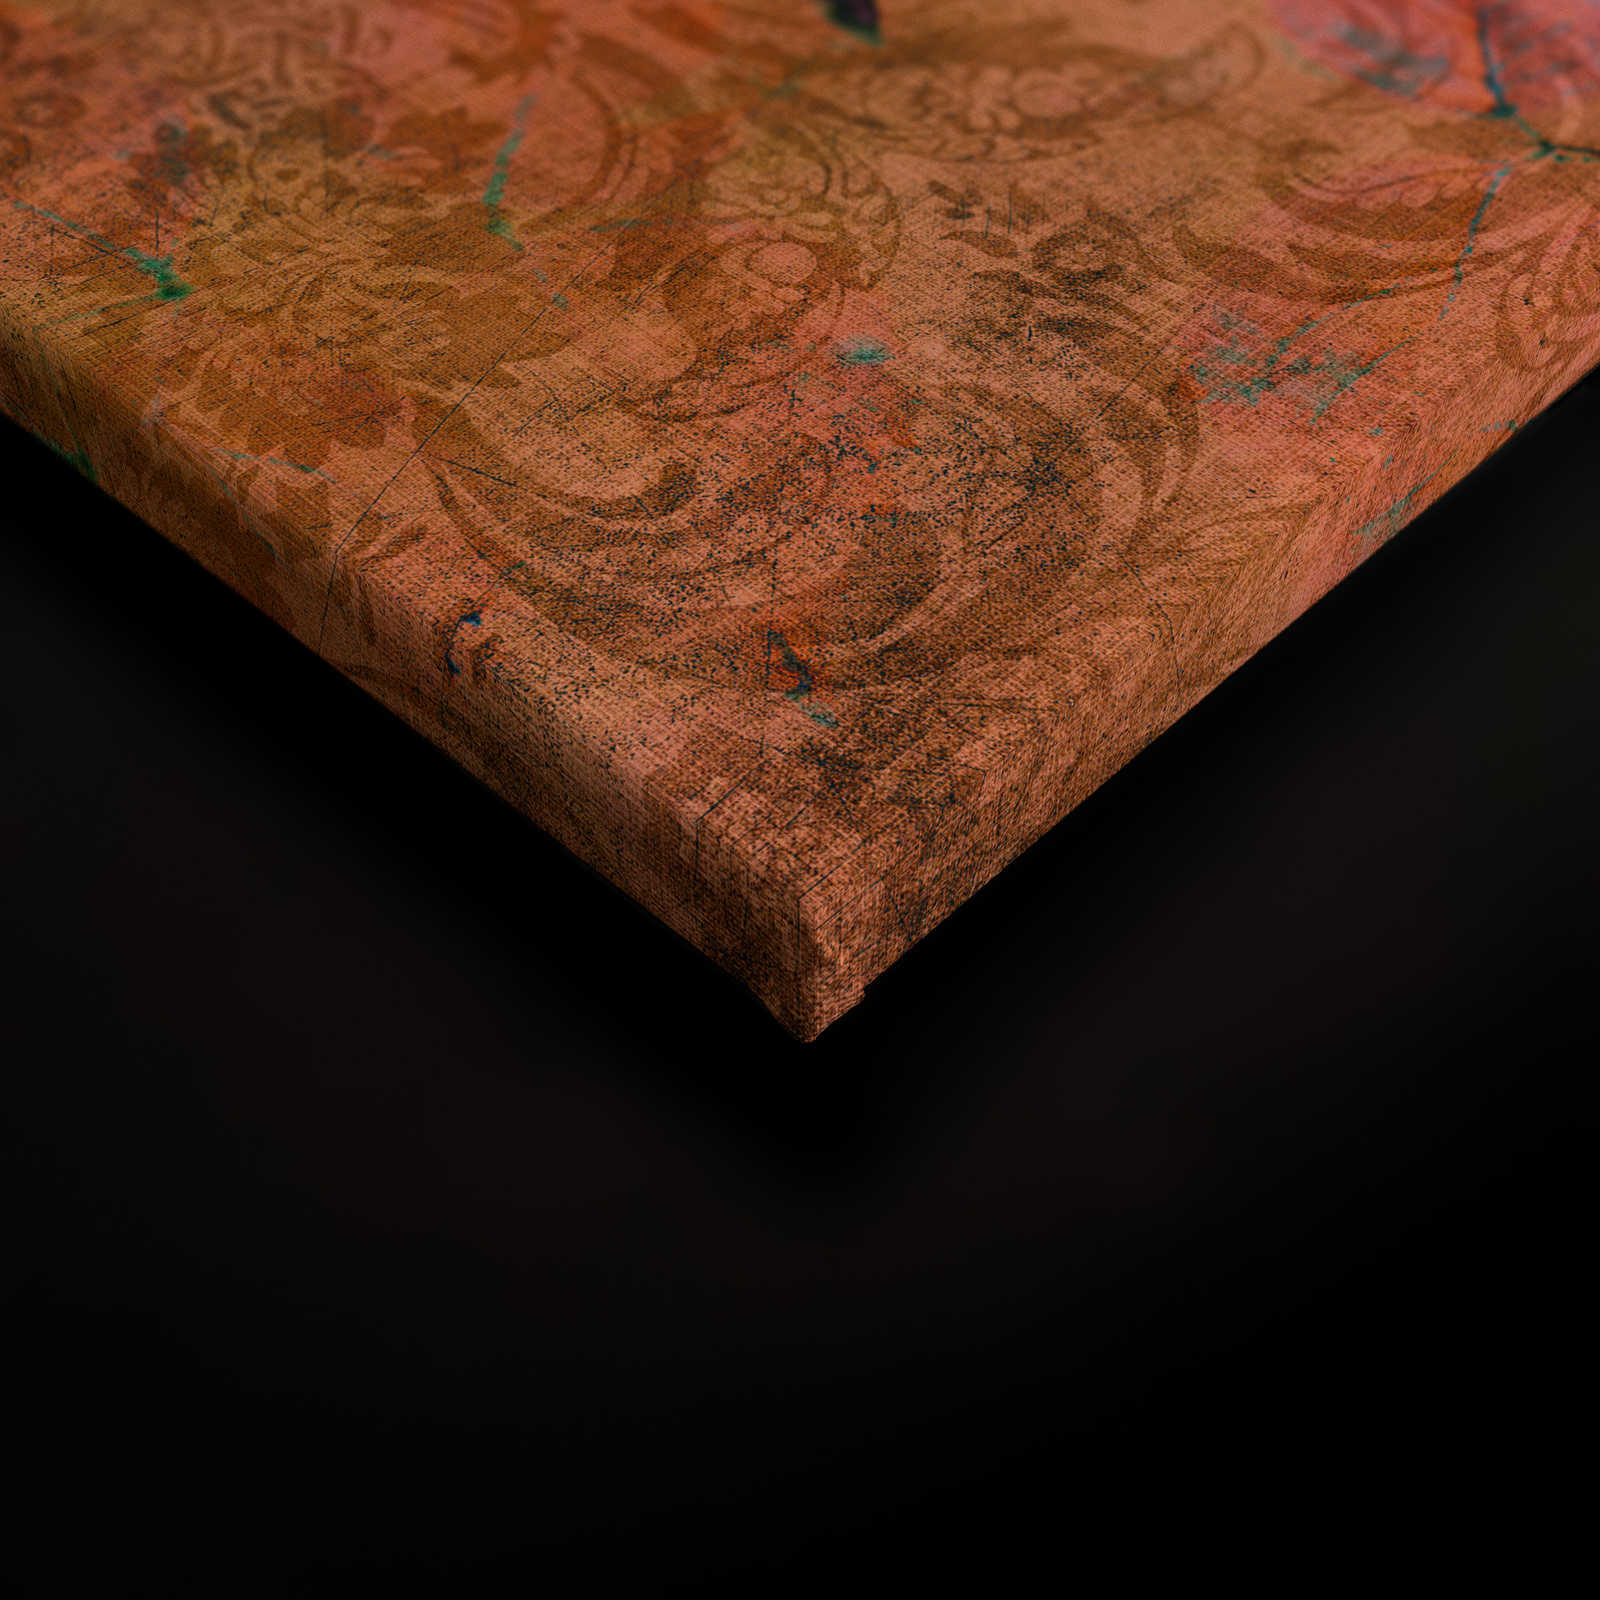             Nazomer 2 - Bloemrijk canvas schilderij in natuurlijke linnenstructuur met warme sfeer - 0,90 m x 0,60 m
        